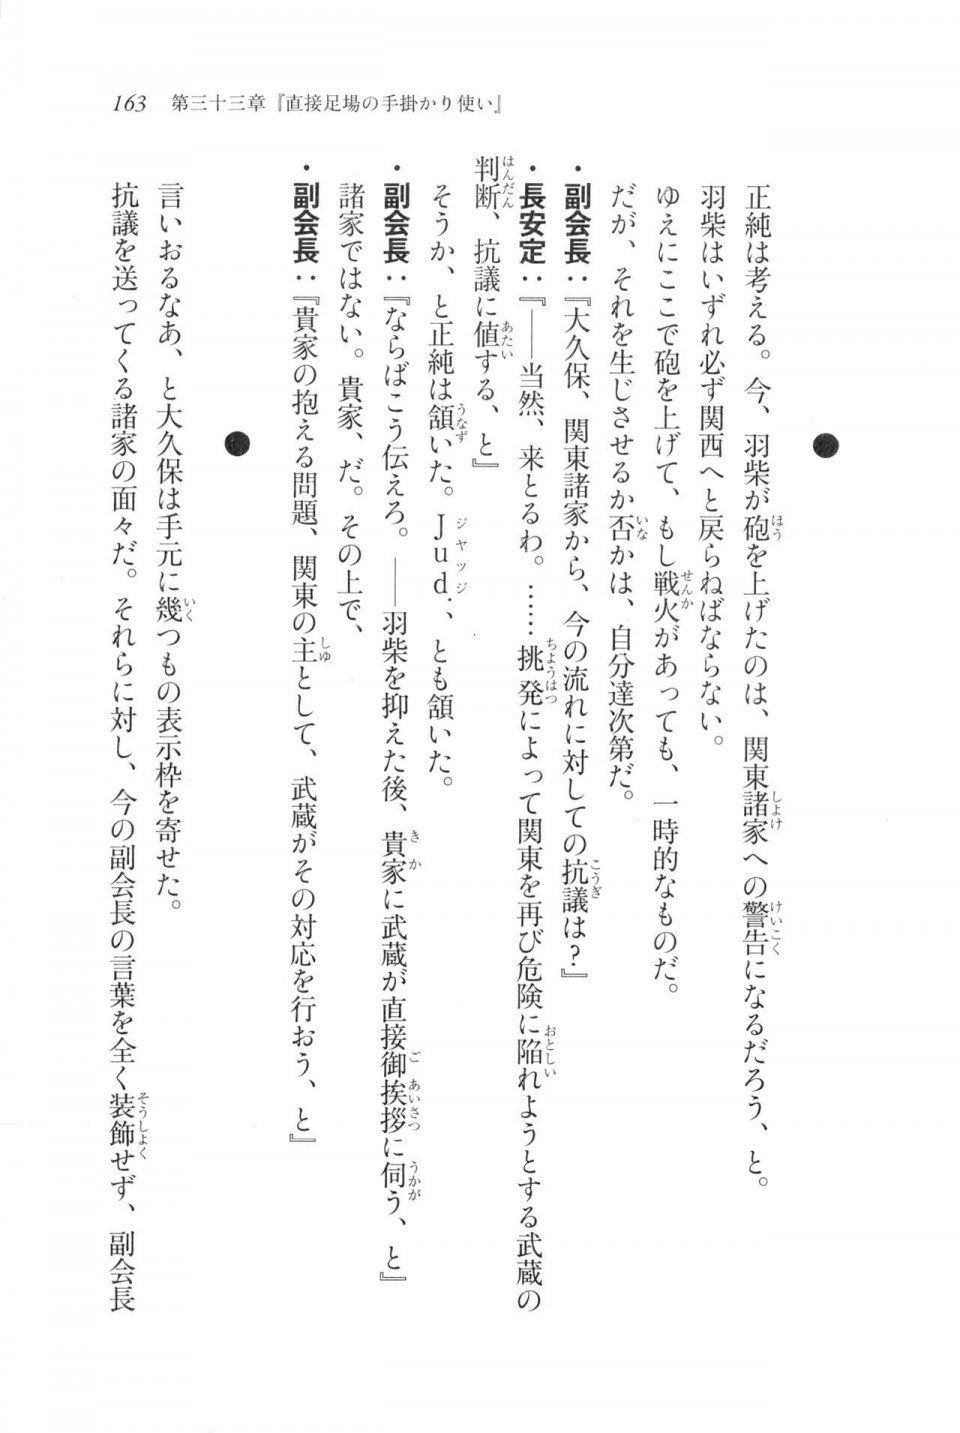 Kyoukai Senjou no Horizon LN Vol 20(8B) - Photo #163